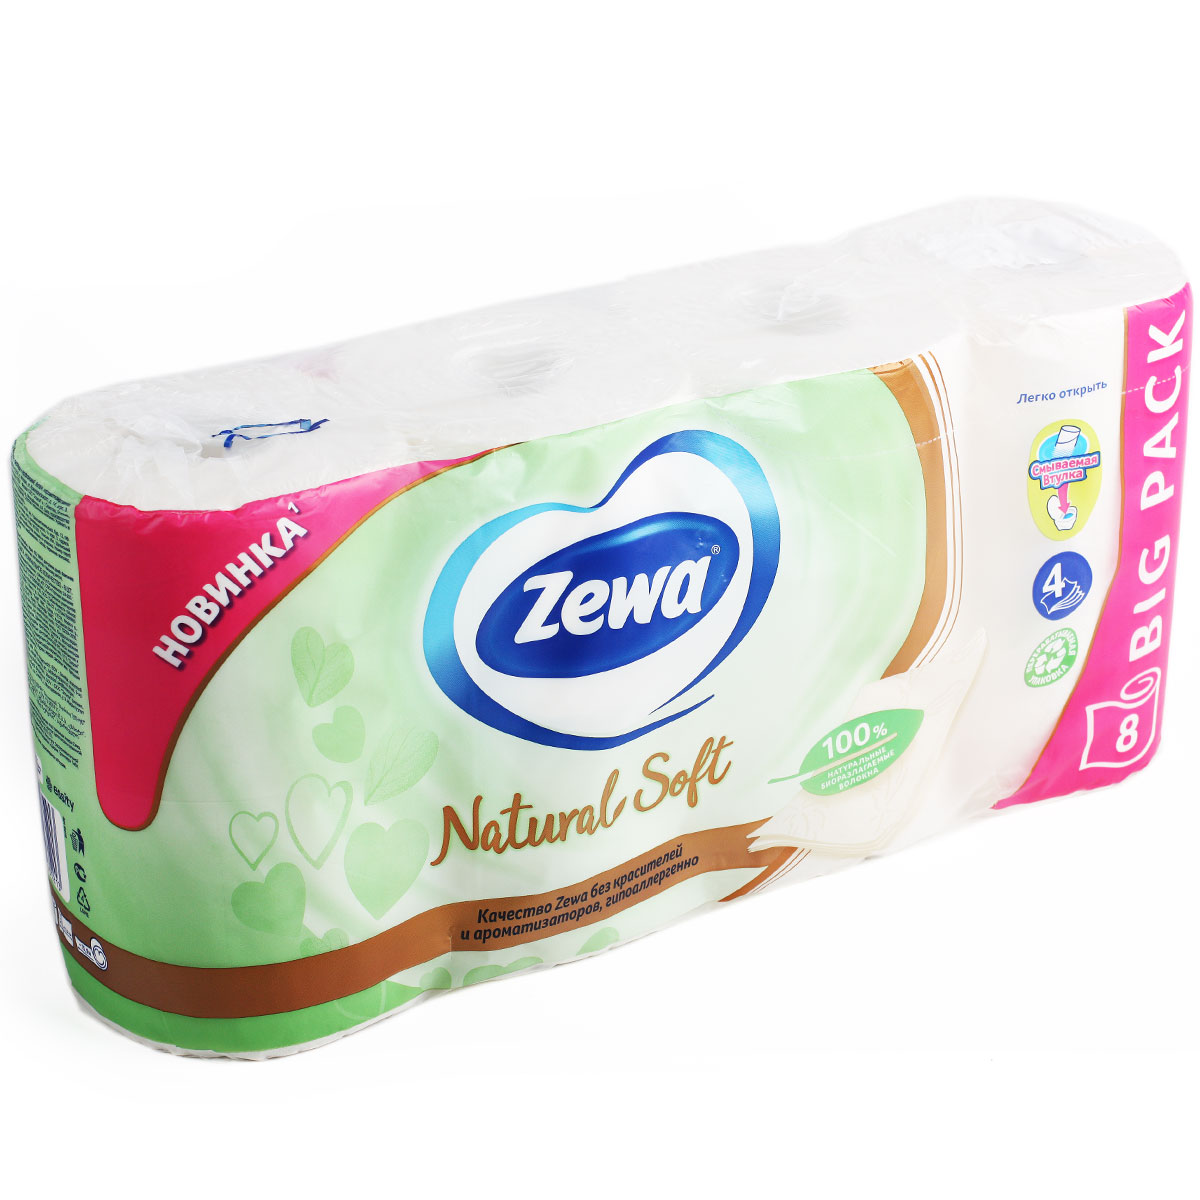 ZEWA Natural Soft туалетная бумага 4 слоя 8Р